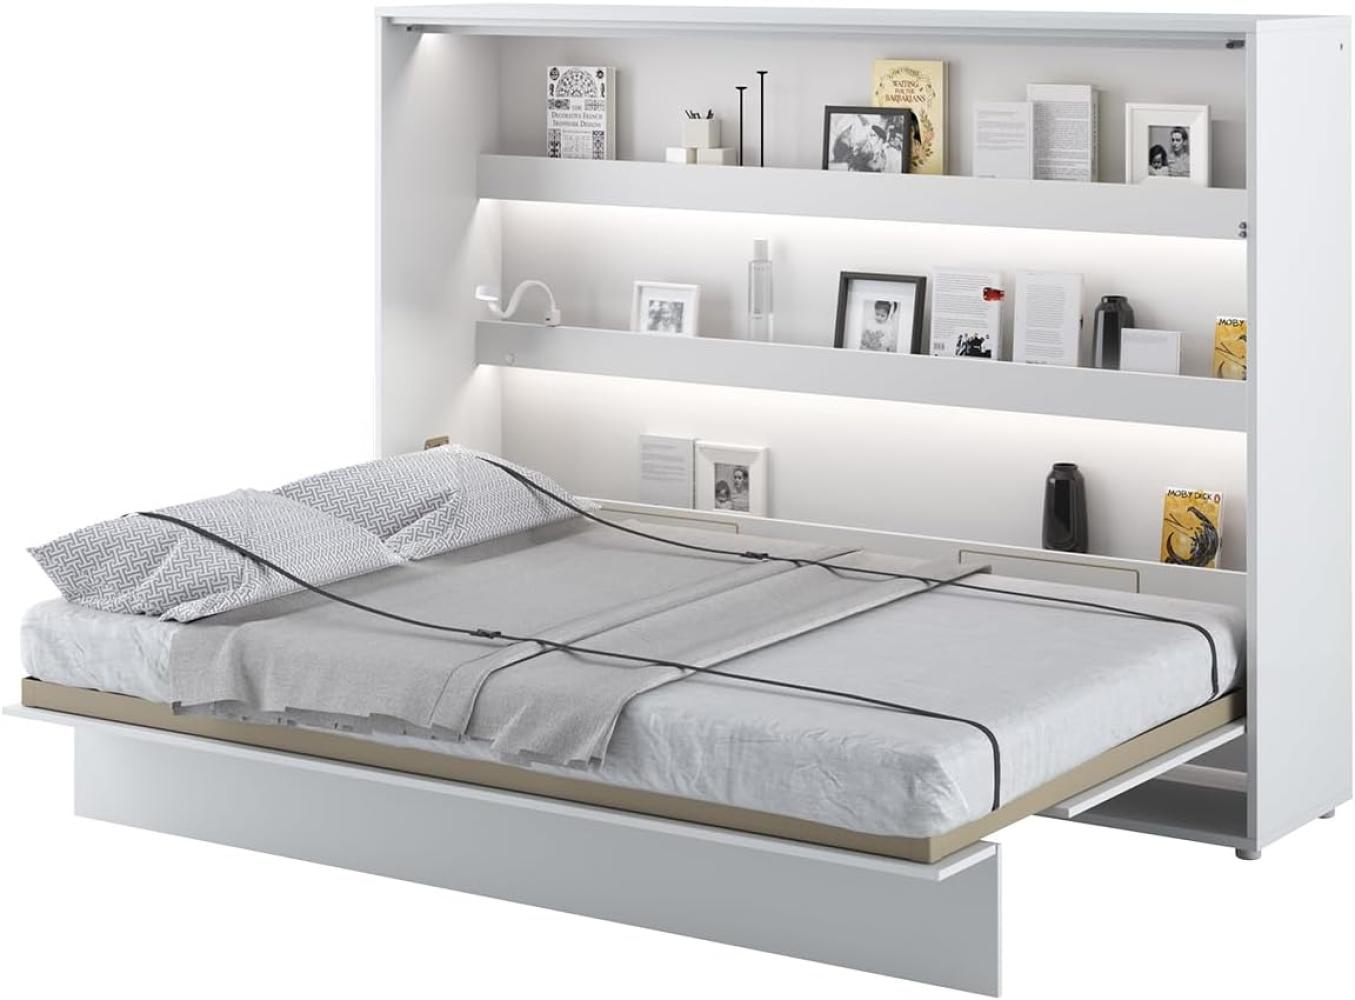 MEBLINI Schrankbett Bed Concept - BC-04 - 140x200cm Horizontal - Weiß Hochglanz/Weiß mit Matratze - Wandbett mit Lattenrost - Klappbett mit Schrank - Wandklappbett - Murphy Bed - Bettschrank Bild 1